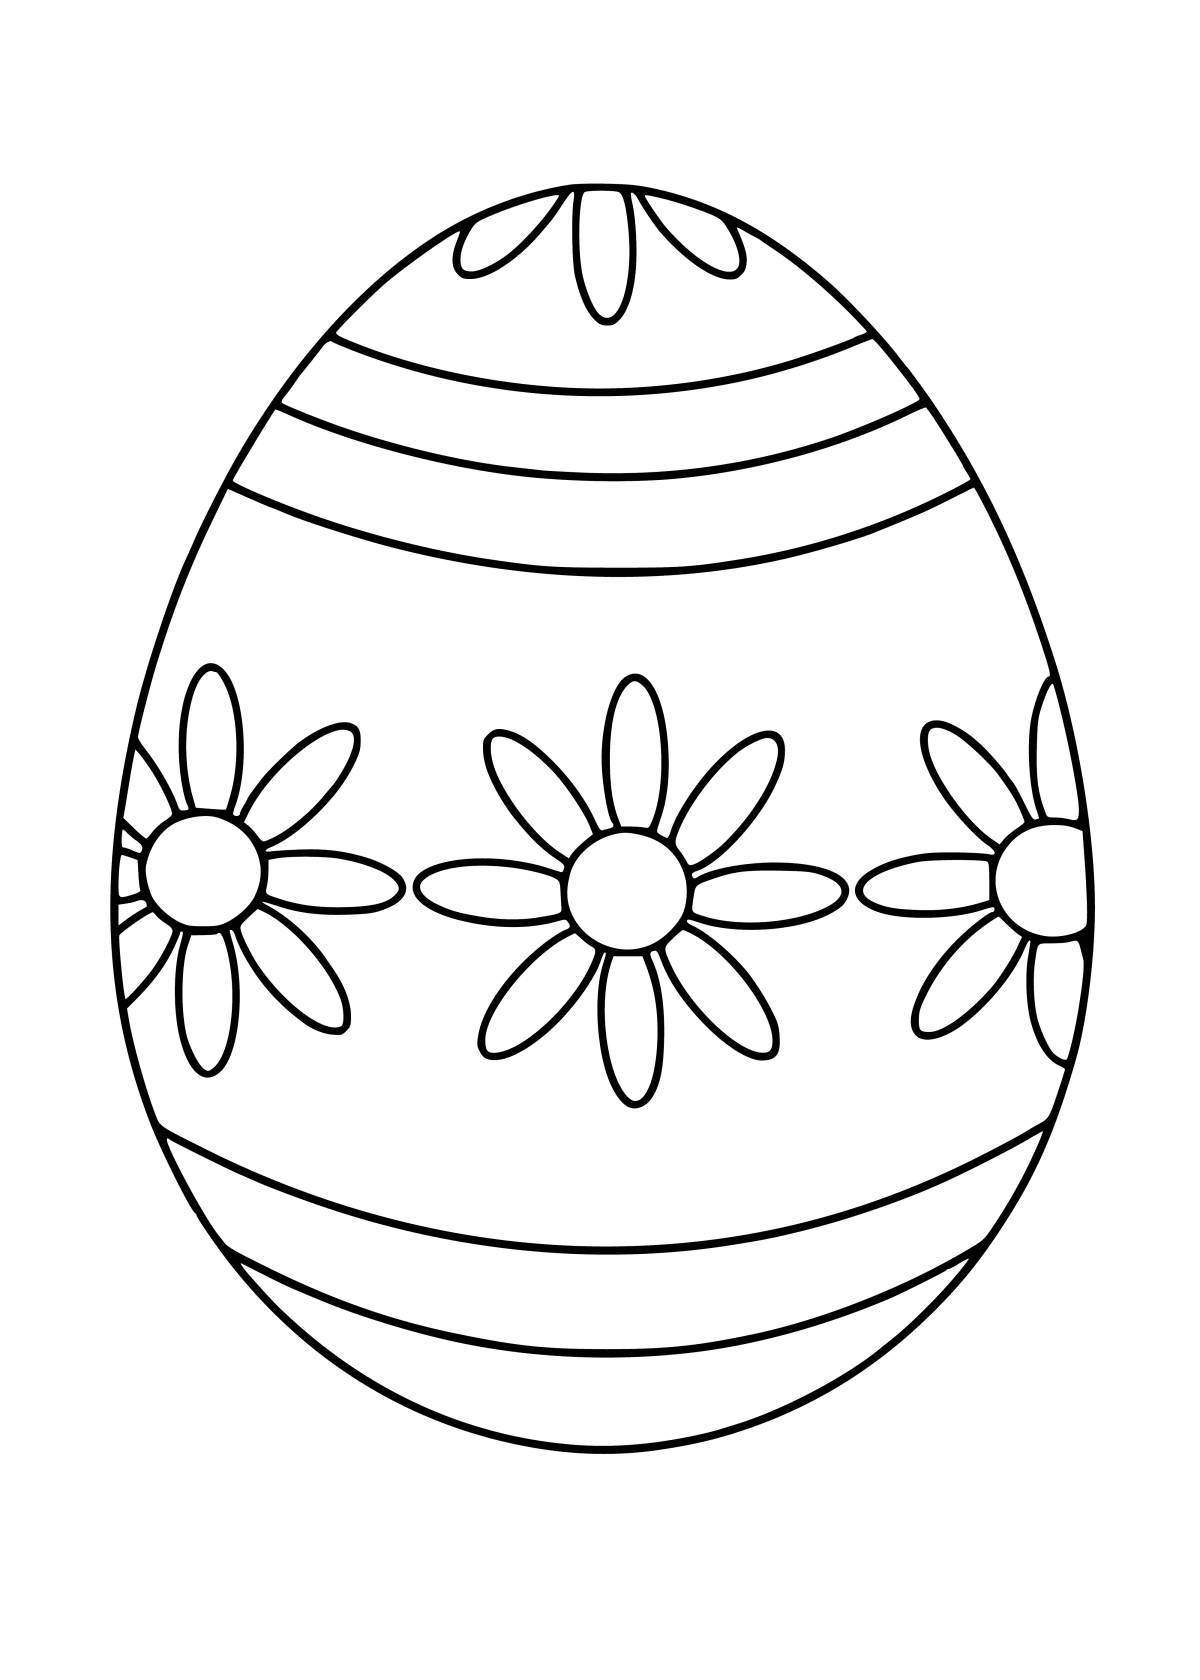 Яйцо шаблон для детей. Пасхальное яйцо раскраска шаблон. Яйцо пасхальное раскраска для детей шаблоны. Раскраски яйца на Пасху для детей. Раскраски пасочных яиц.